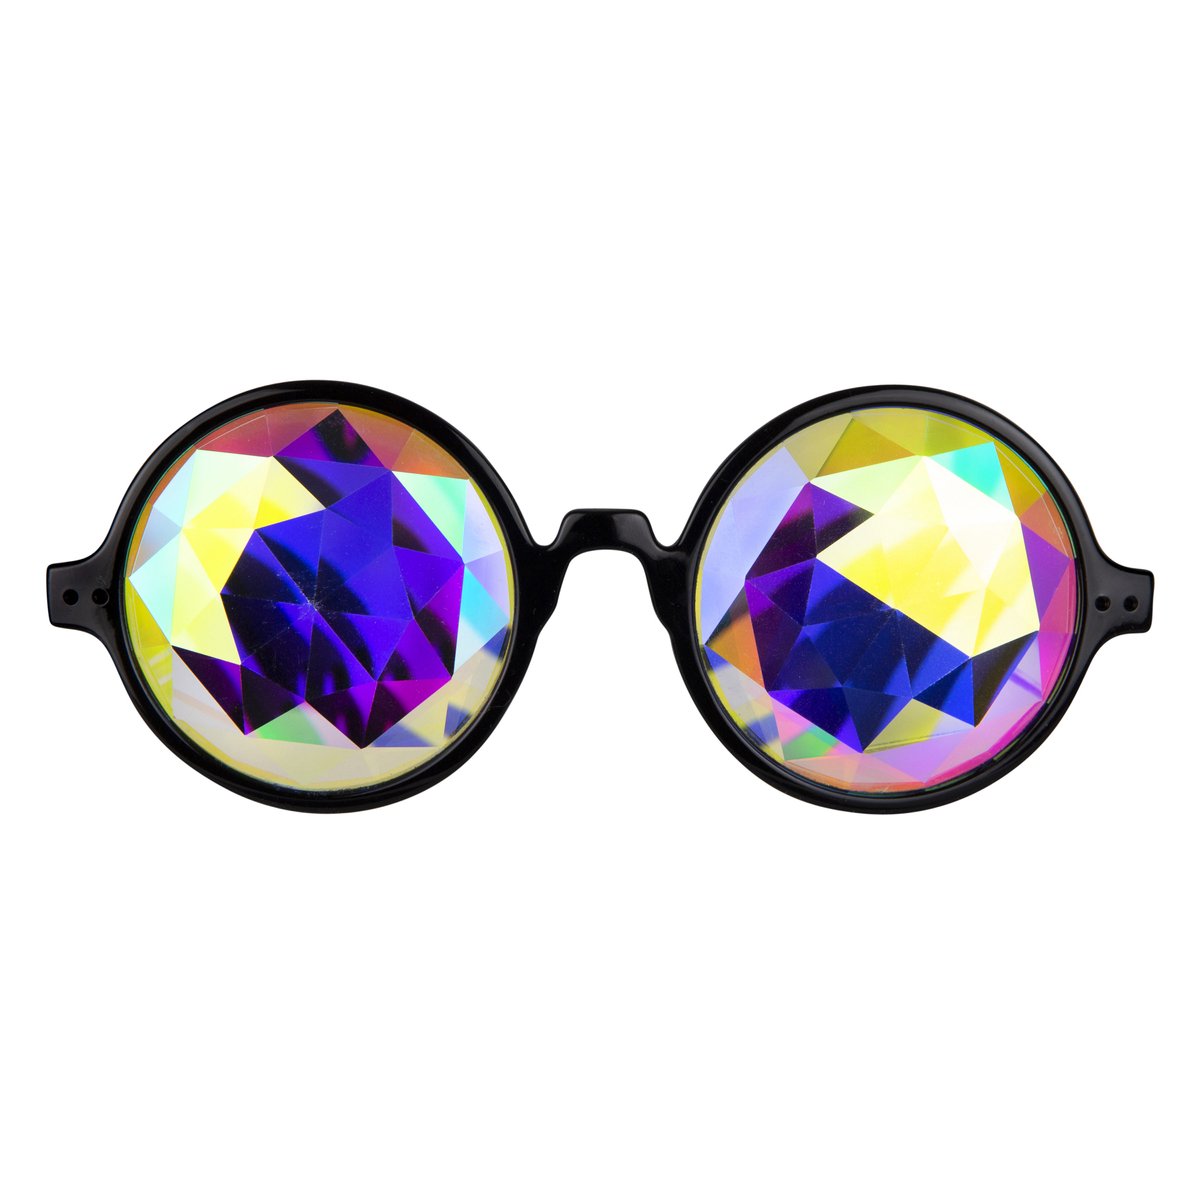 Rave Zonnebril - Festival Glasses - Caleidoscoop bril - Techno bril - Feestbril - Toverbril